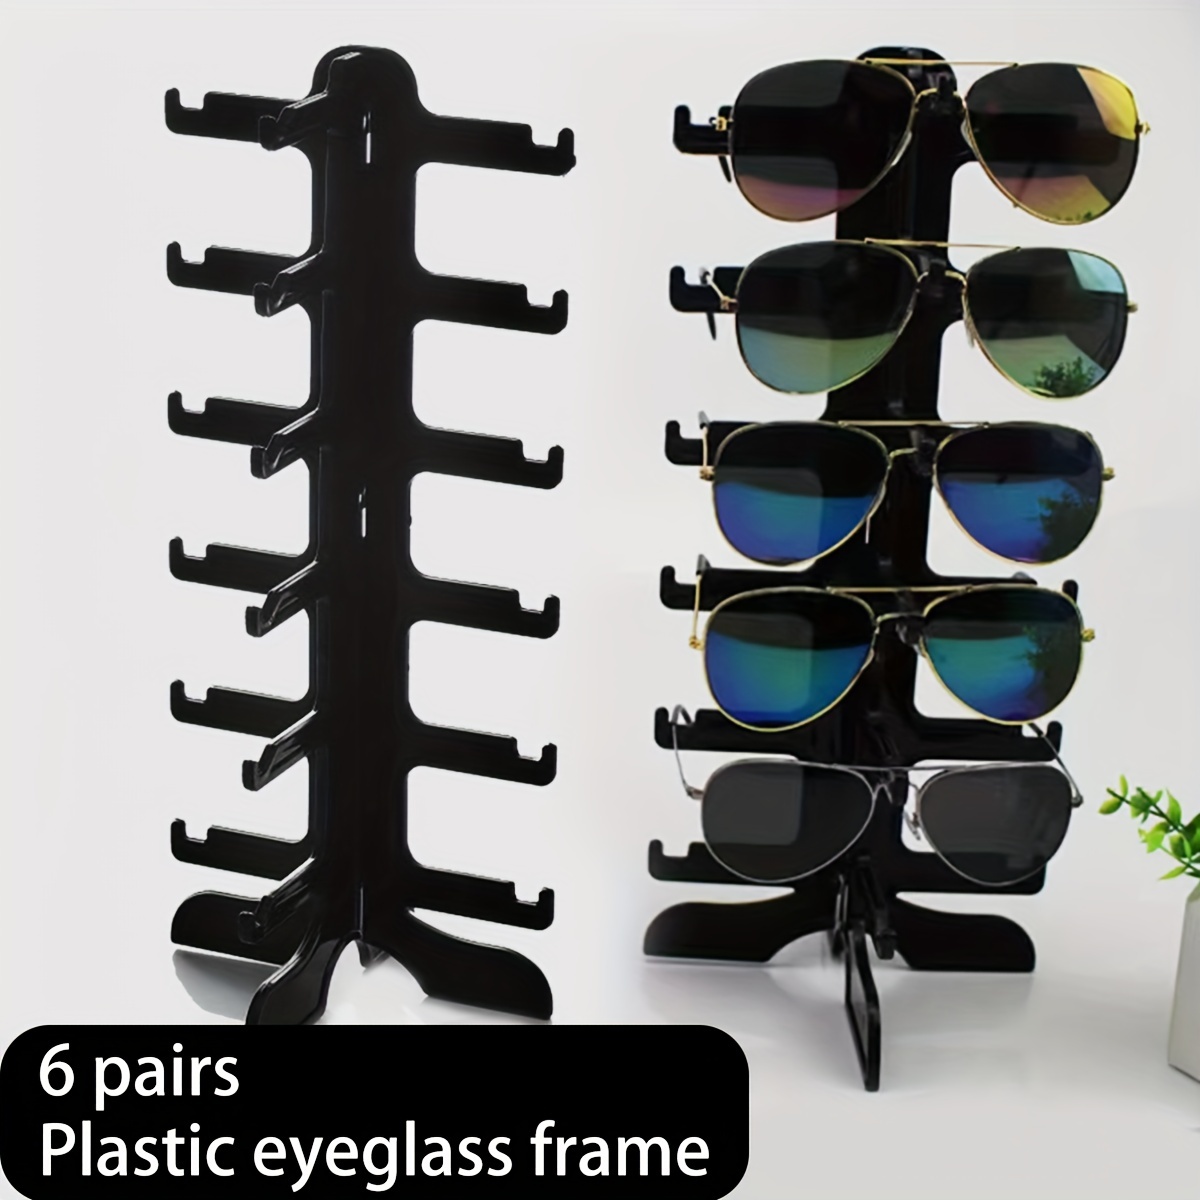 Sonnenbrillen Ablage - Kostenloser Versand Für Neue Benutzer - Temu Austria